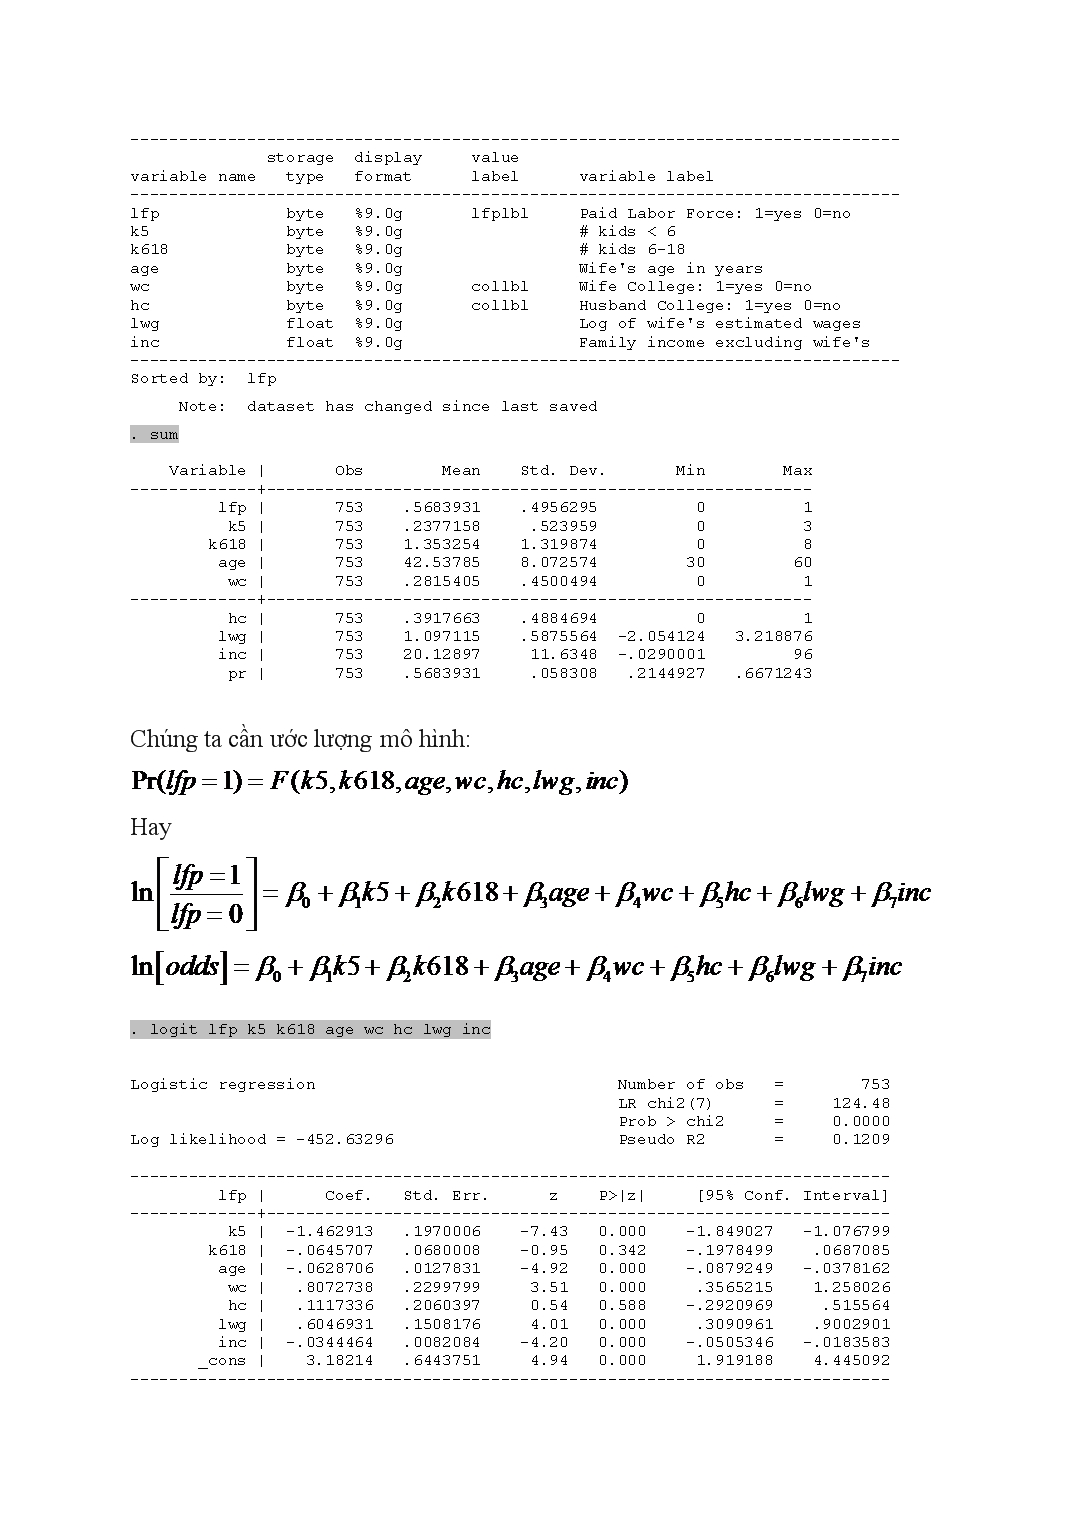 Mô hình hồi quy Binary Logit Binary Logit Regression Model trang 4